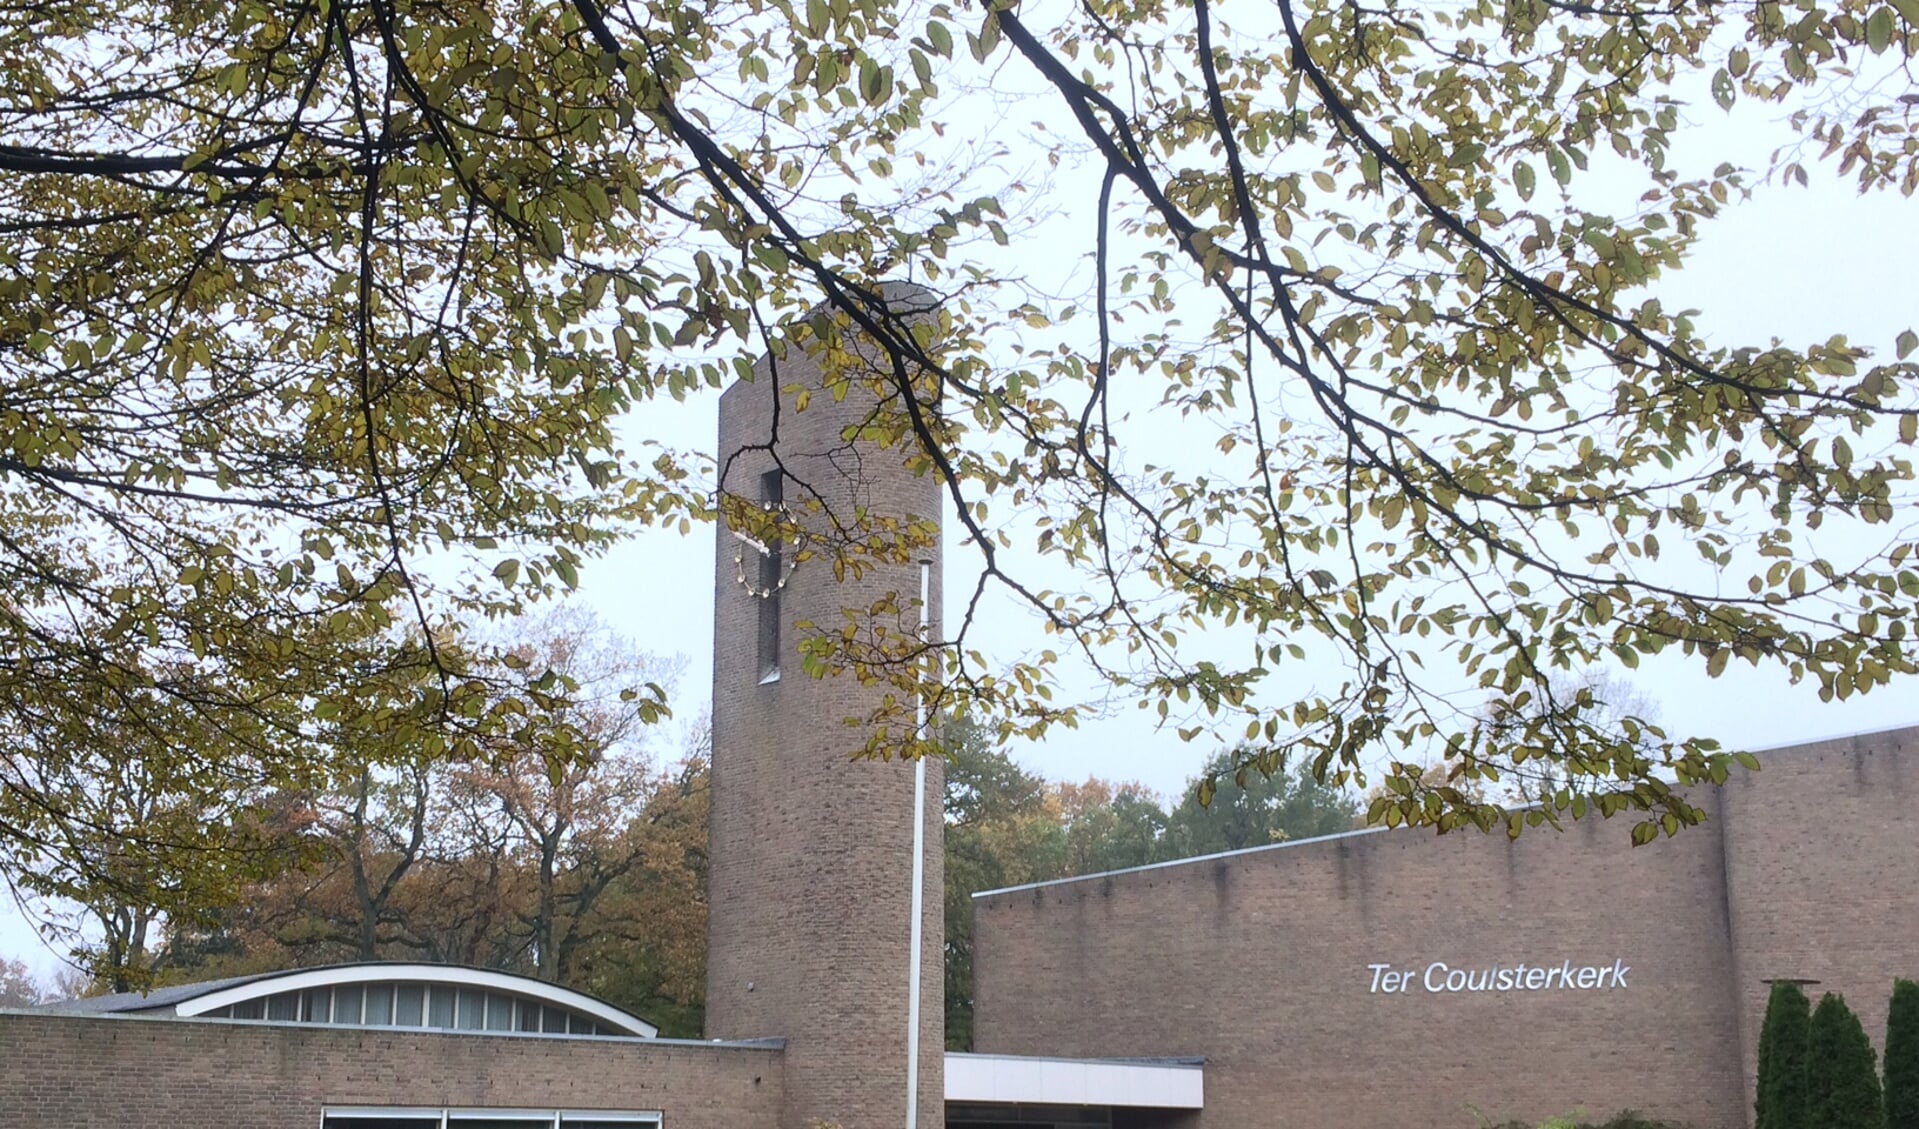 De Ter Coulsterkerk aan de Holleweg.